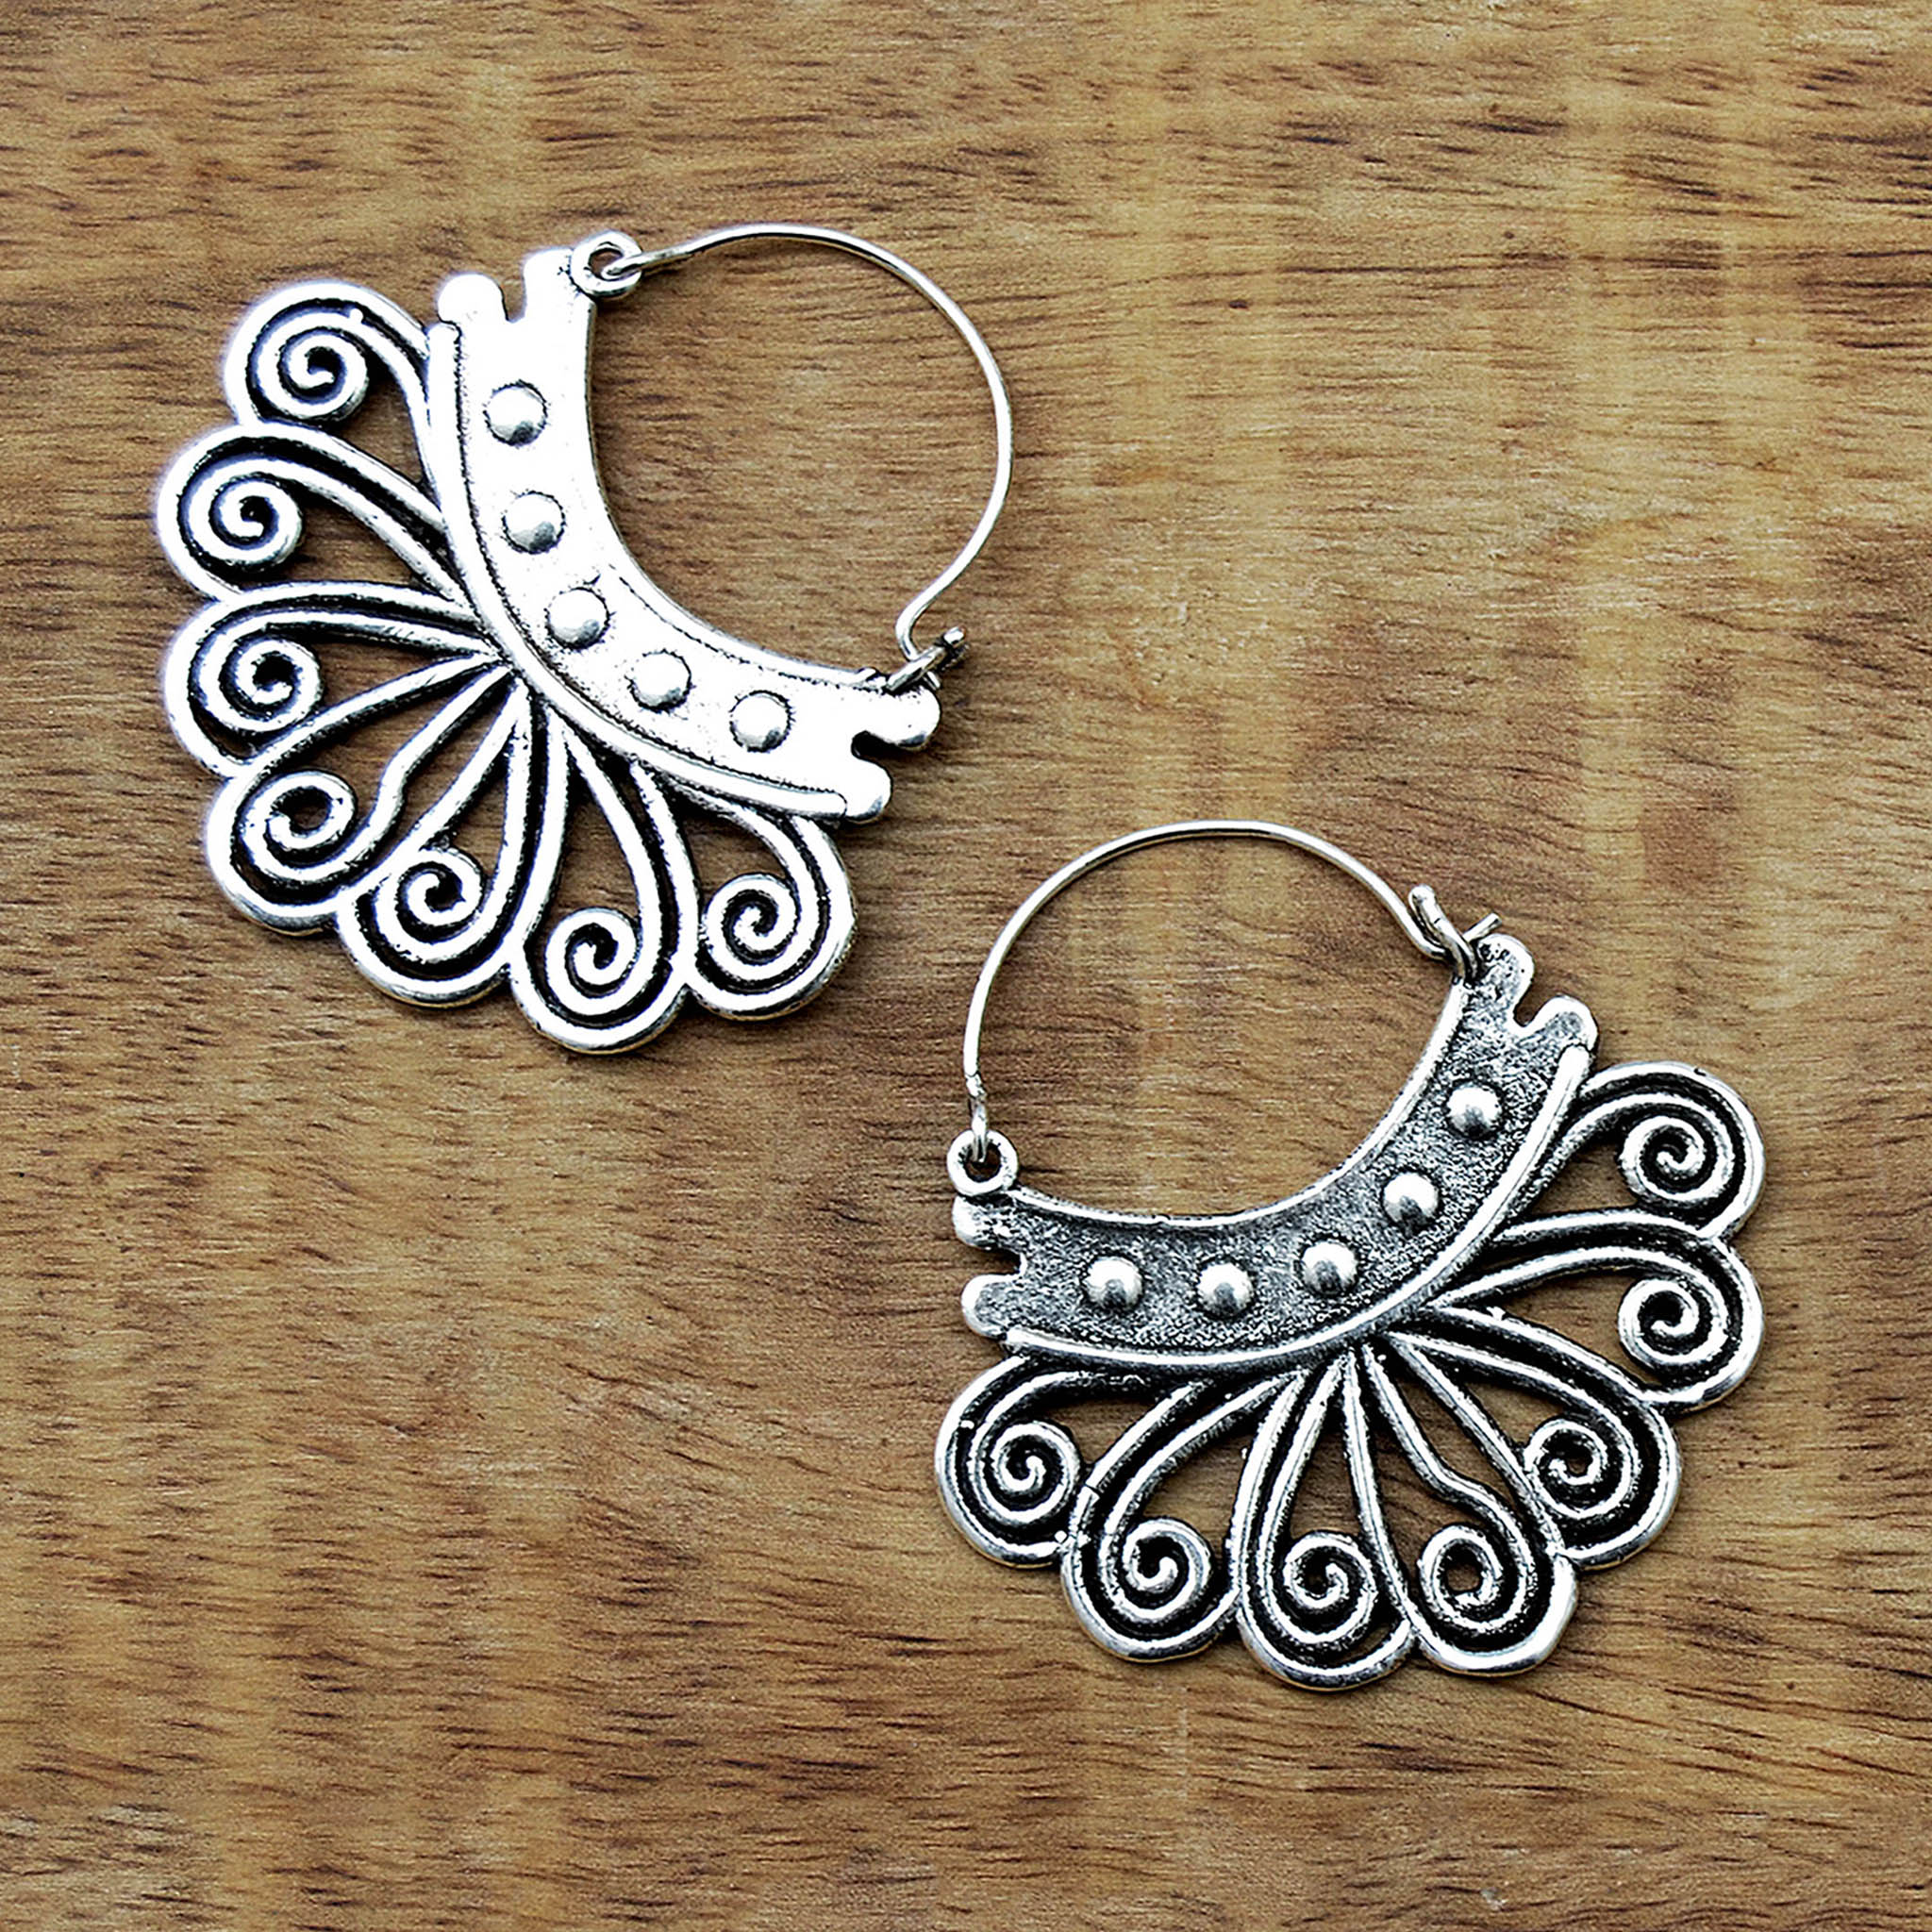 Small silver tribal earrings